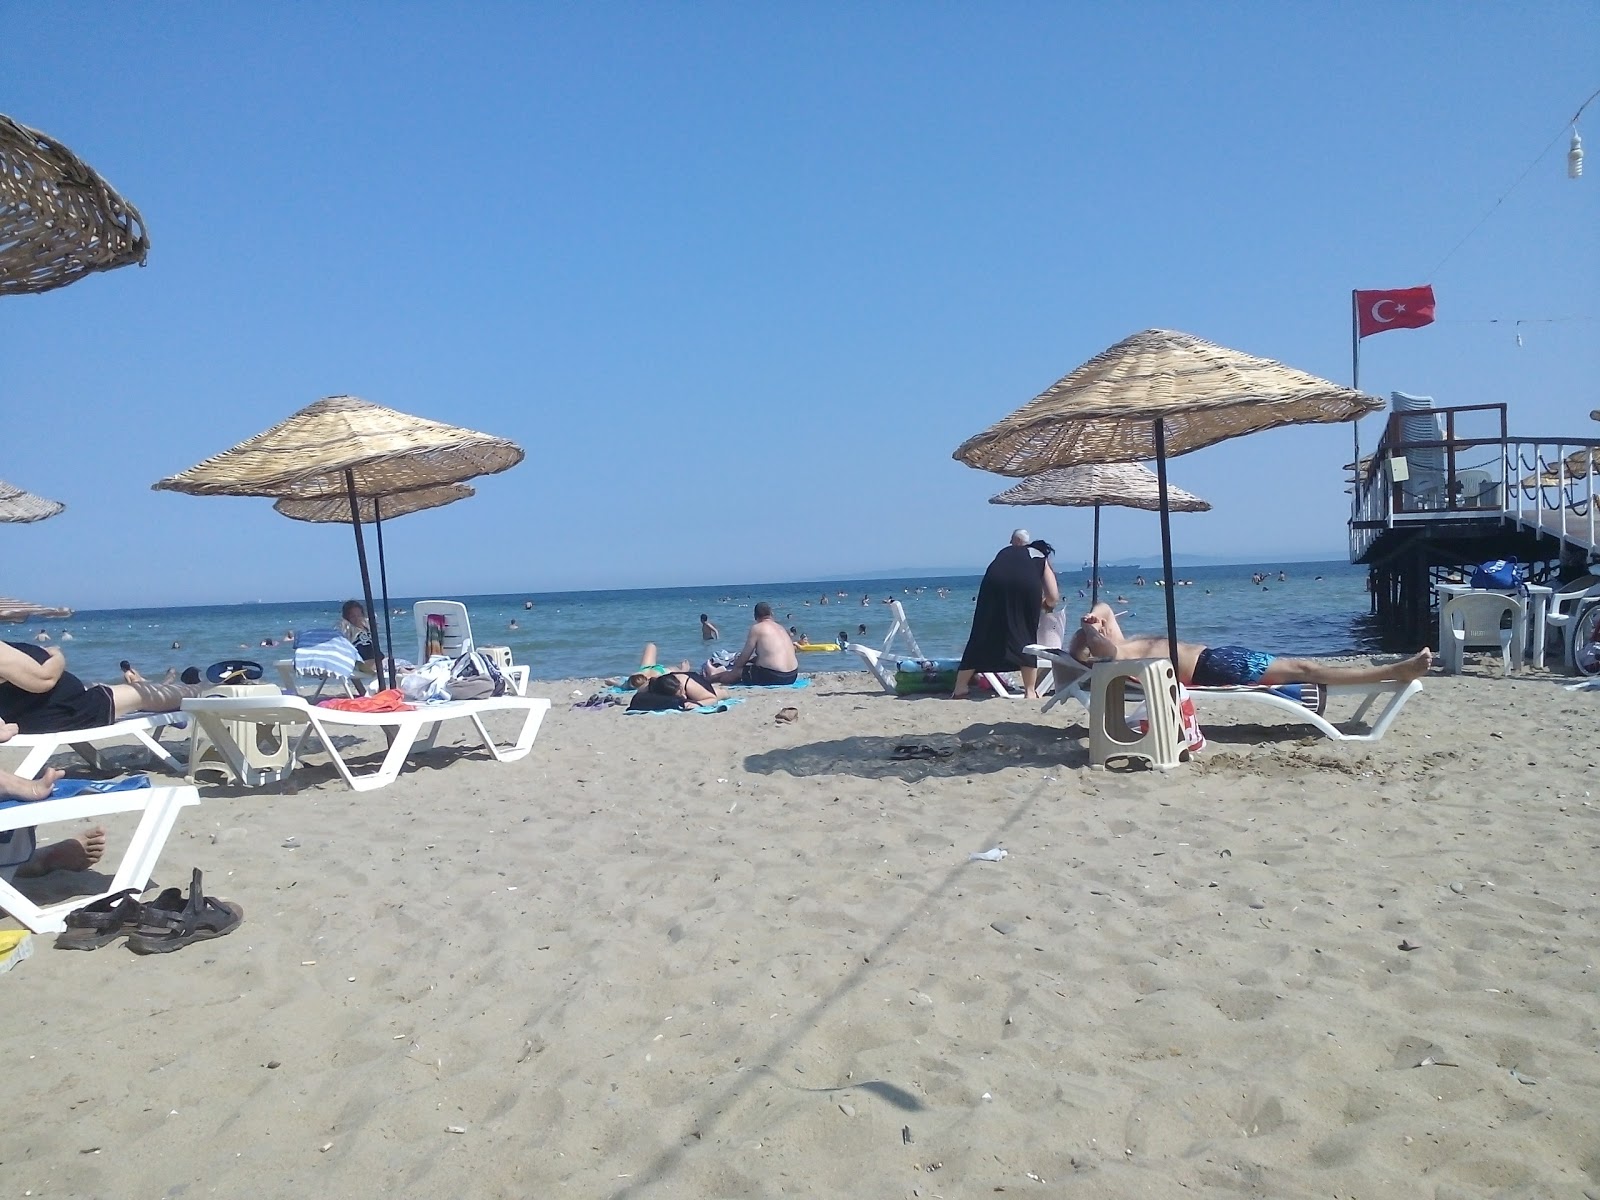 Zdjęcie Sarkoy beach II - popularne miejsce wśród znawców relaksu